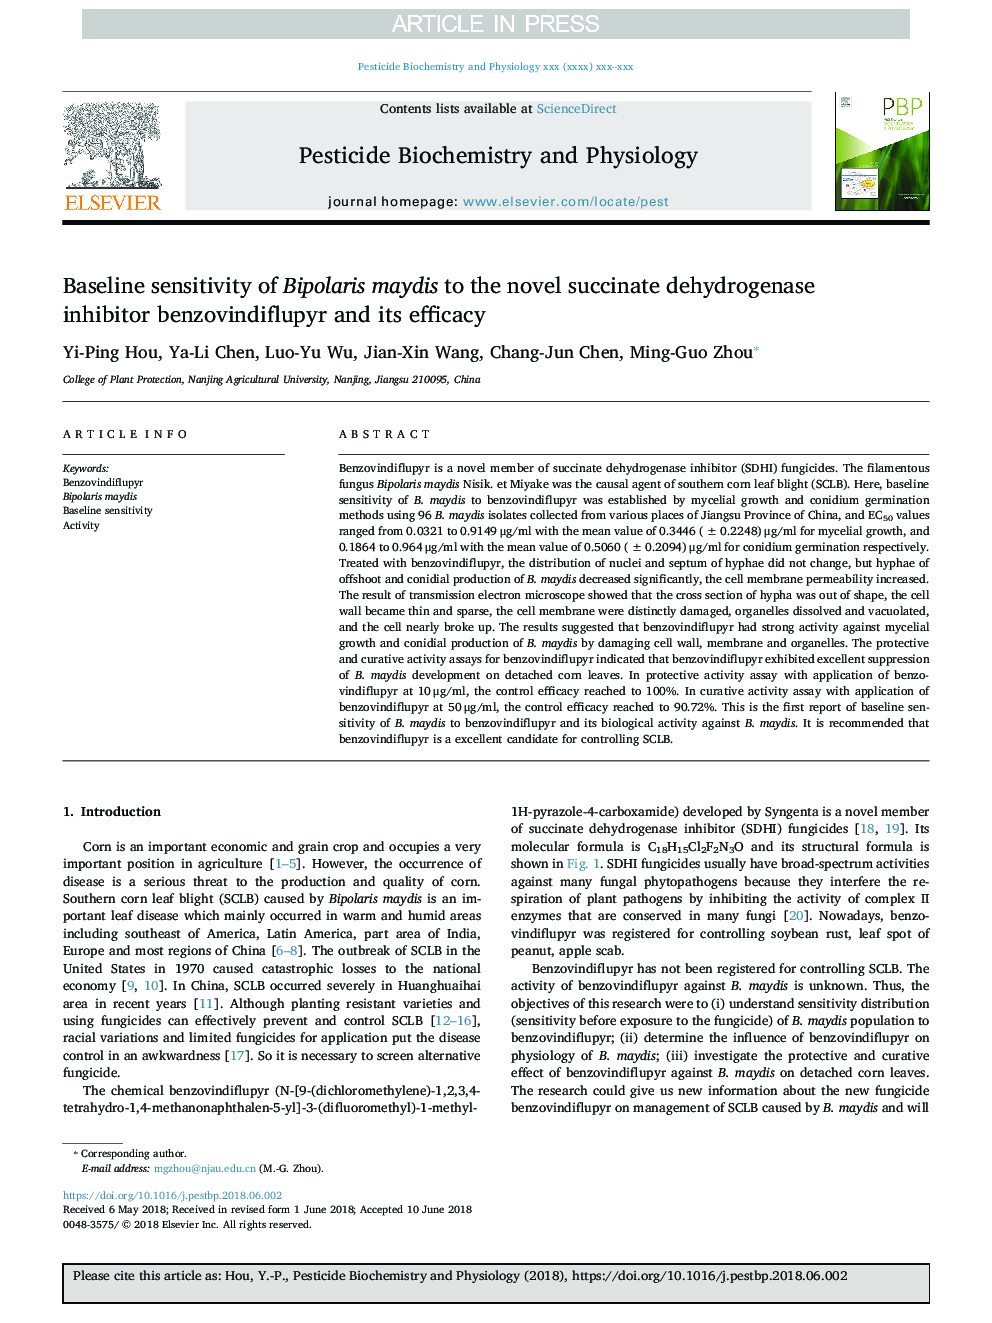 Baseline sensitivity of Bipolaris maydis to the novel succinate dehydrogenase inhibitor benzovindiflupyr and its efficacy